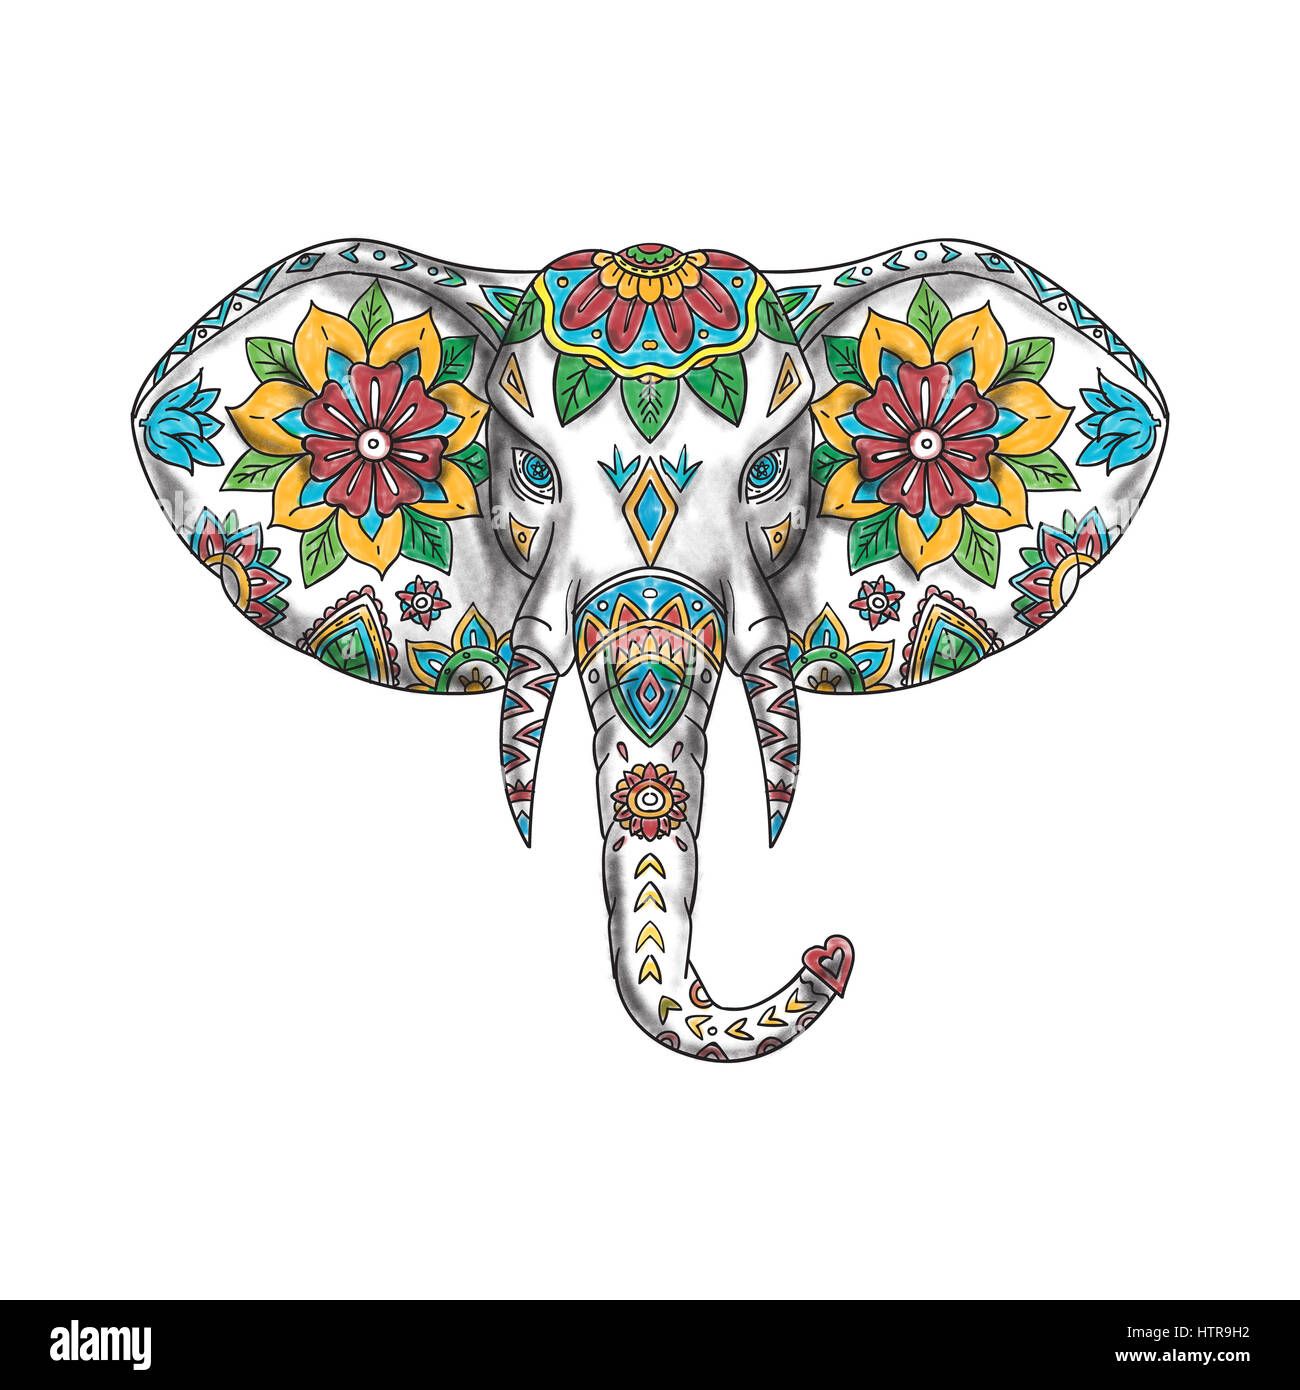 Tattoo-Stil Abbildung von einem Elefantenkopf von vorne am isolierten weißen Hintergrund betrachtet. Stockfoto